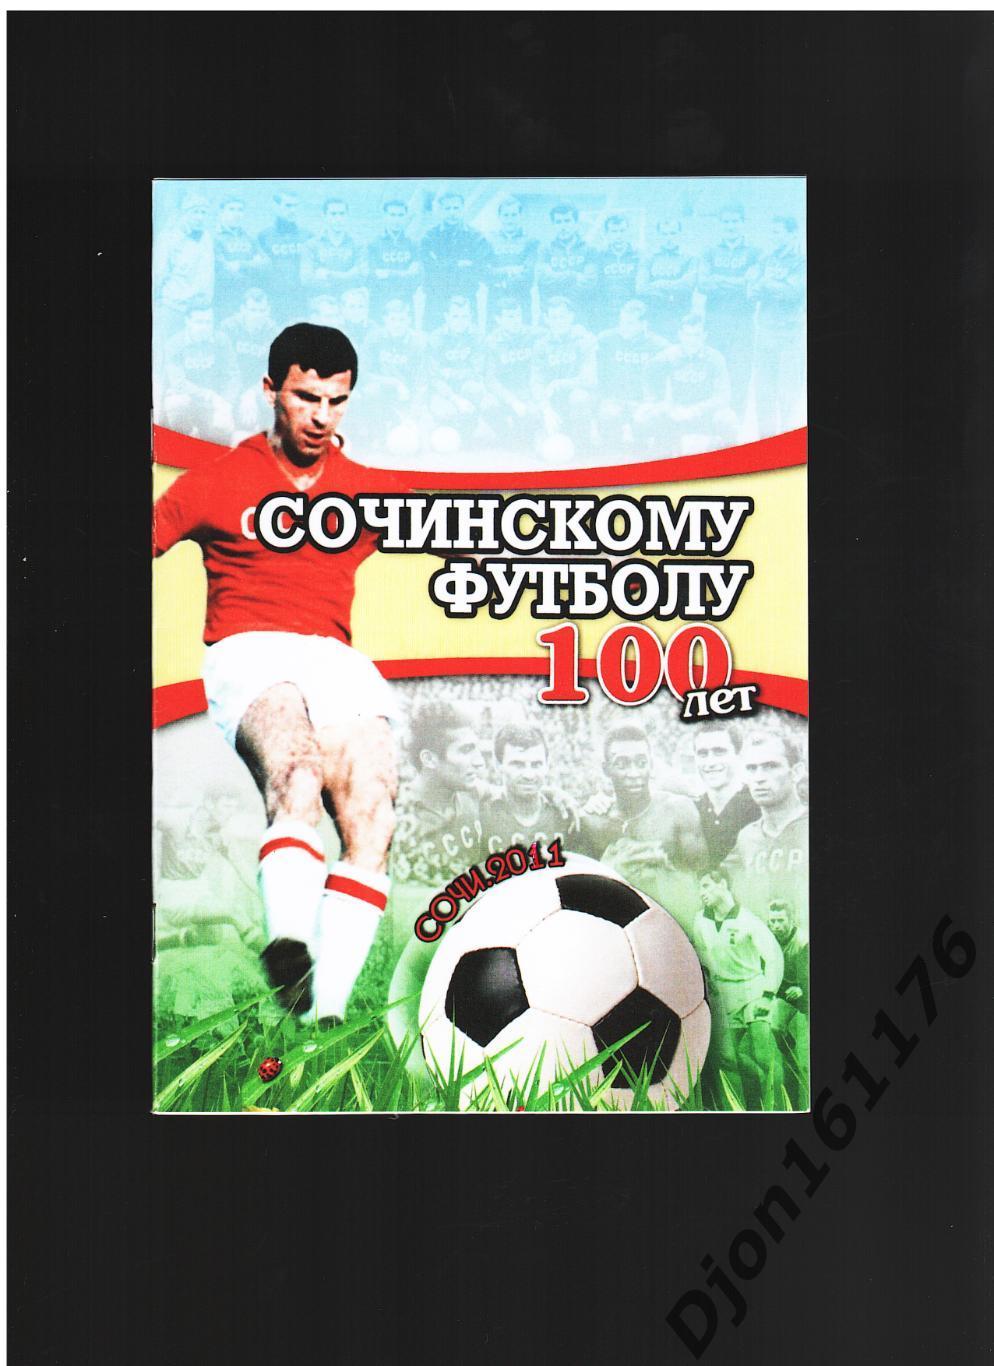 «Сочинскому футболу 100 лет».